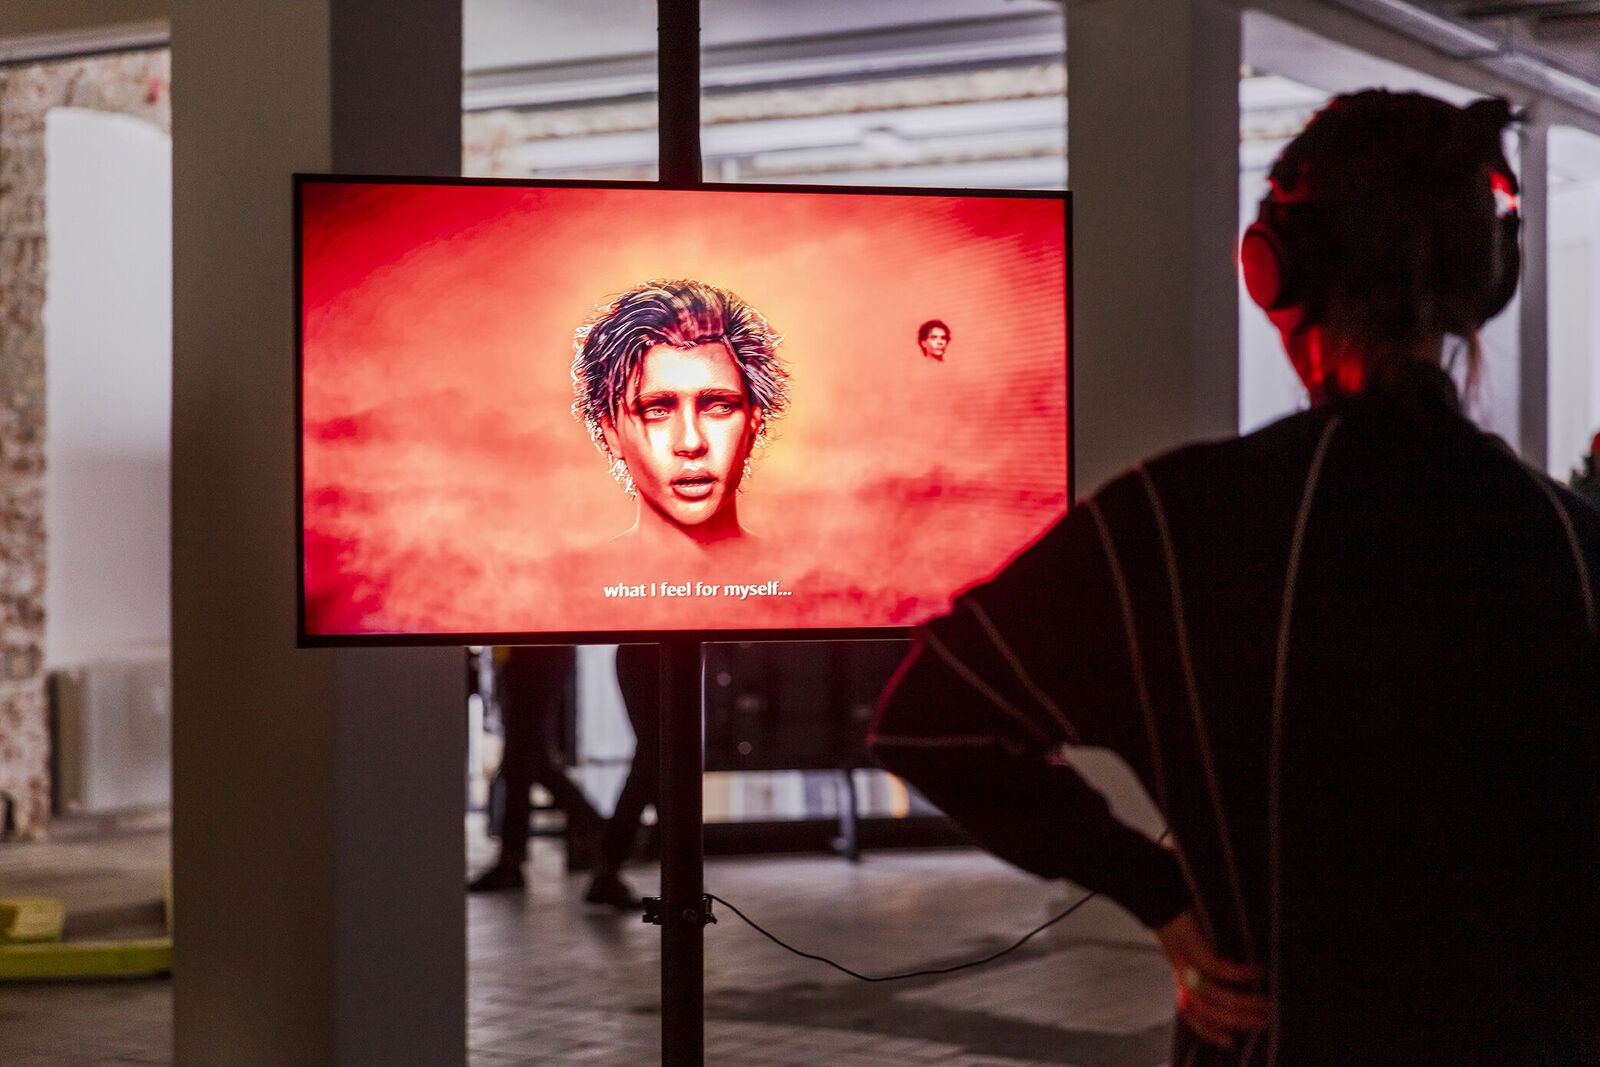 Eine Person steht in einer Ausstellung und betrachtet ein digitales Kunstwerk auf einem Bildschirm, das ein Gesicht vor einem roten Hintergrund zeigt, begleitet von dem Text "what I feel for myself...".